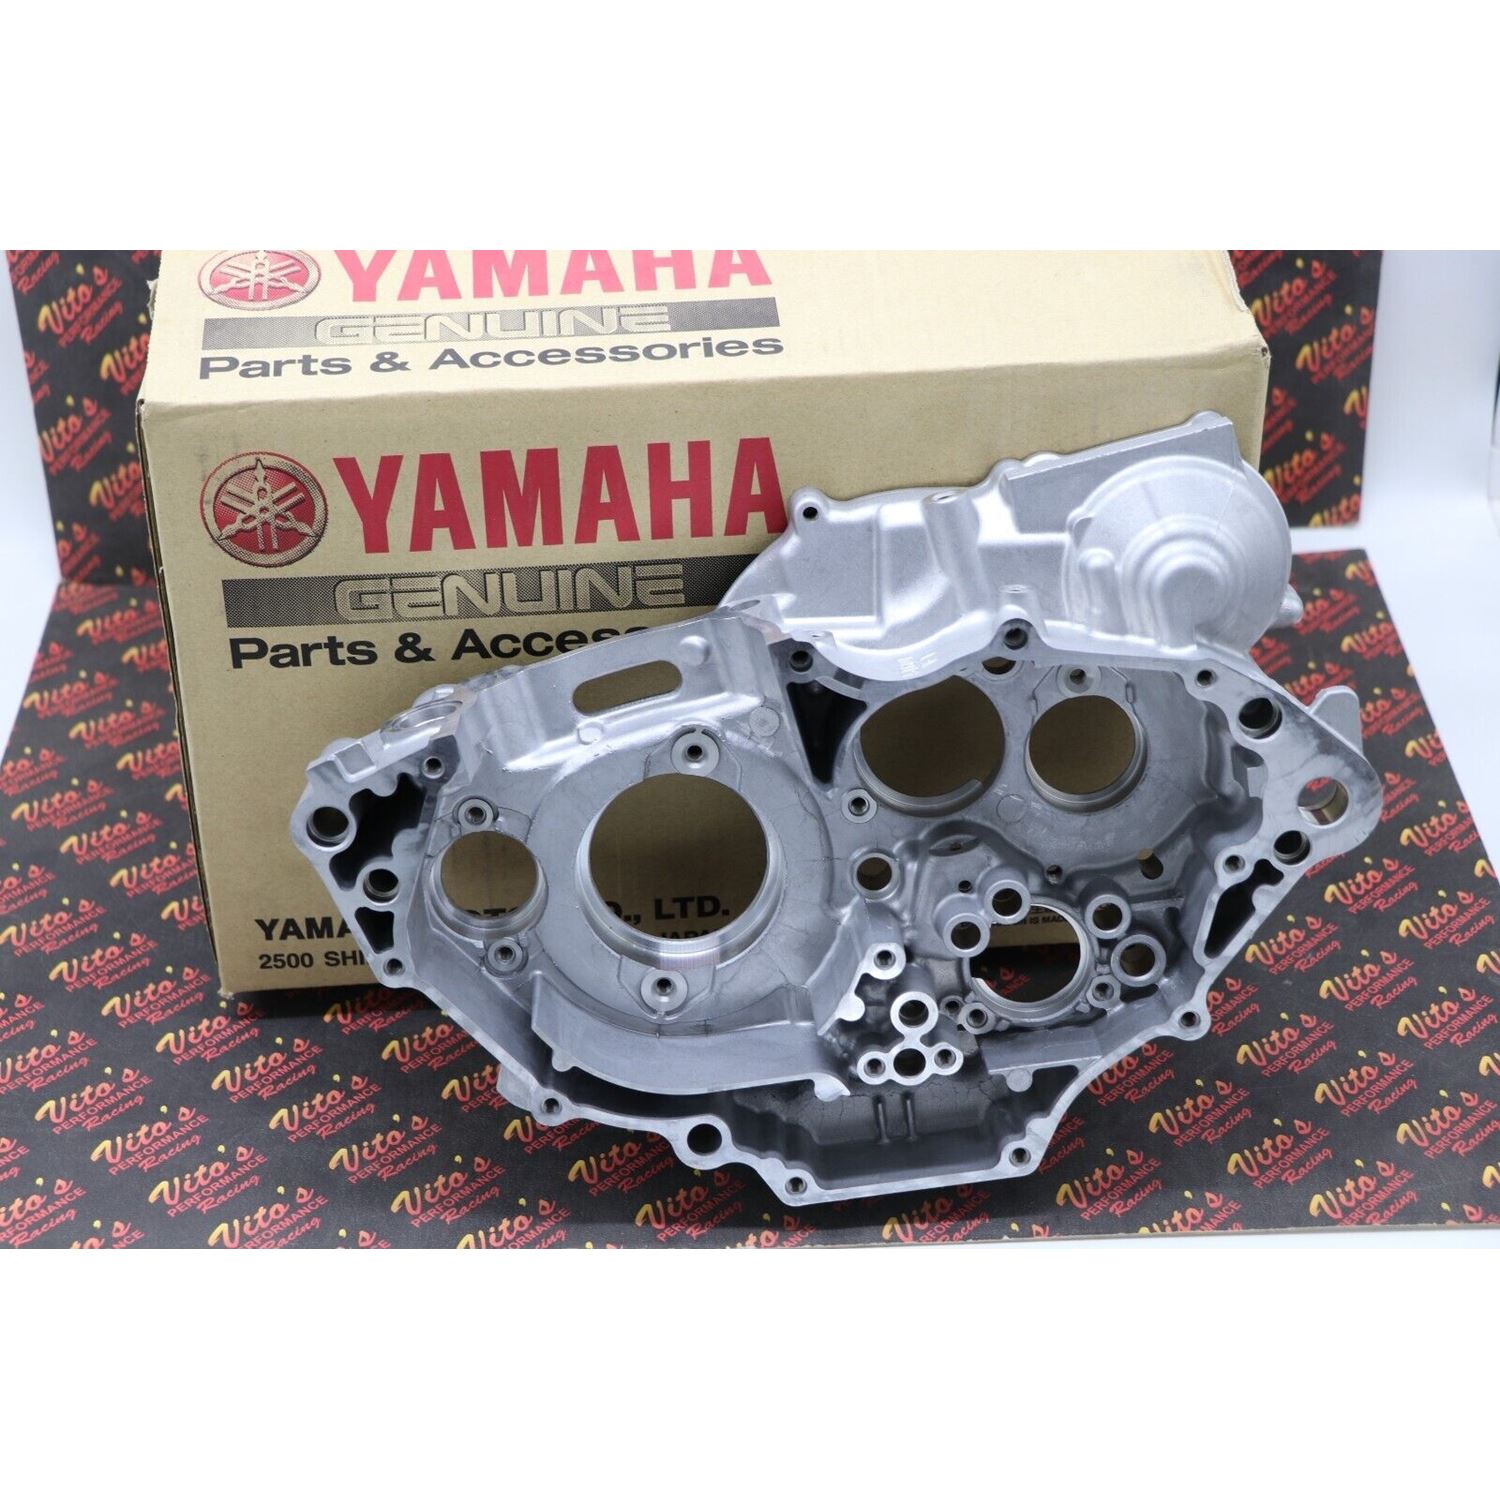 NEW Yamaha YFZ450 Engine right Cases crankcase YFZ